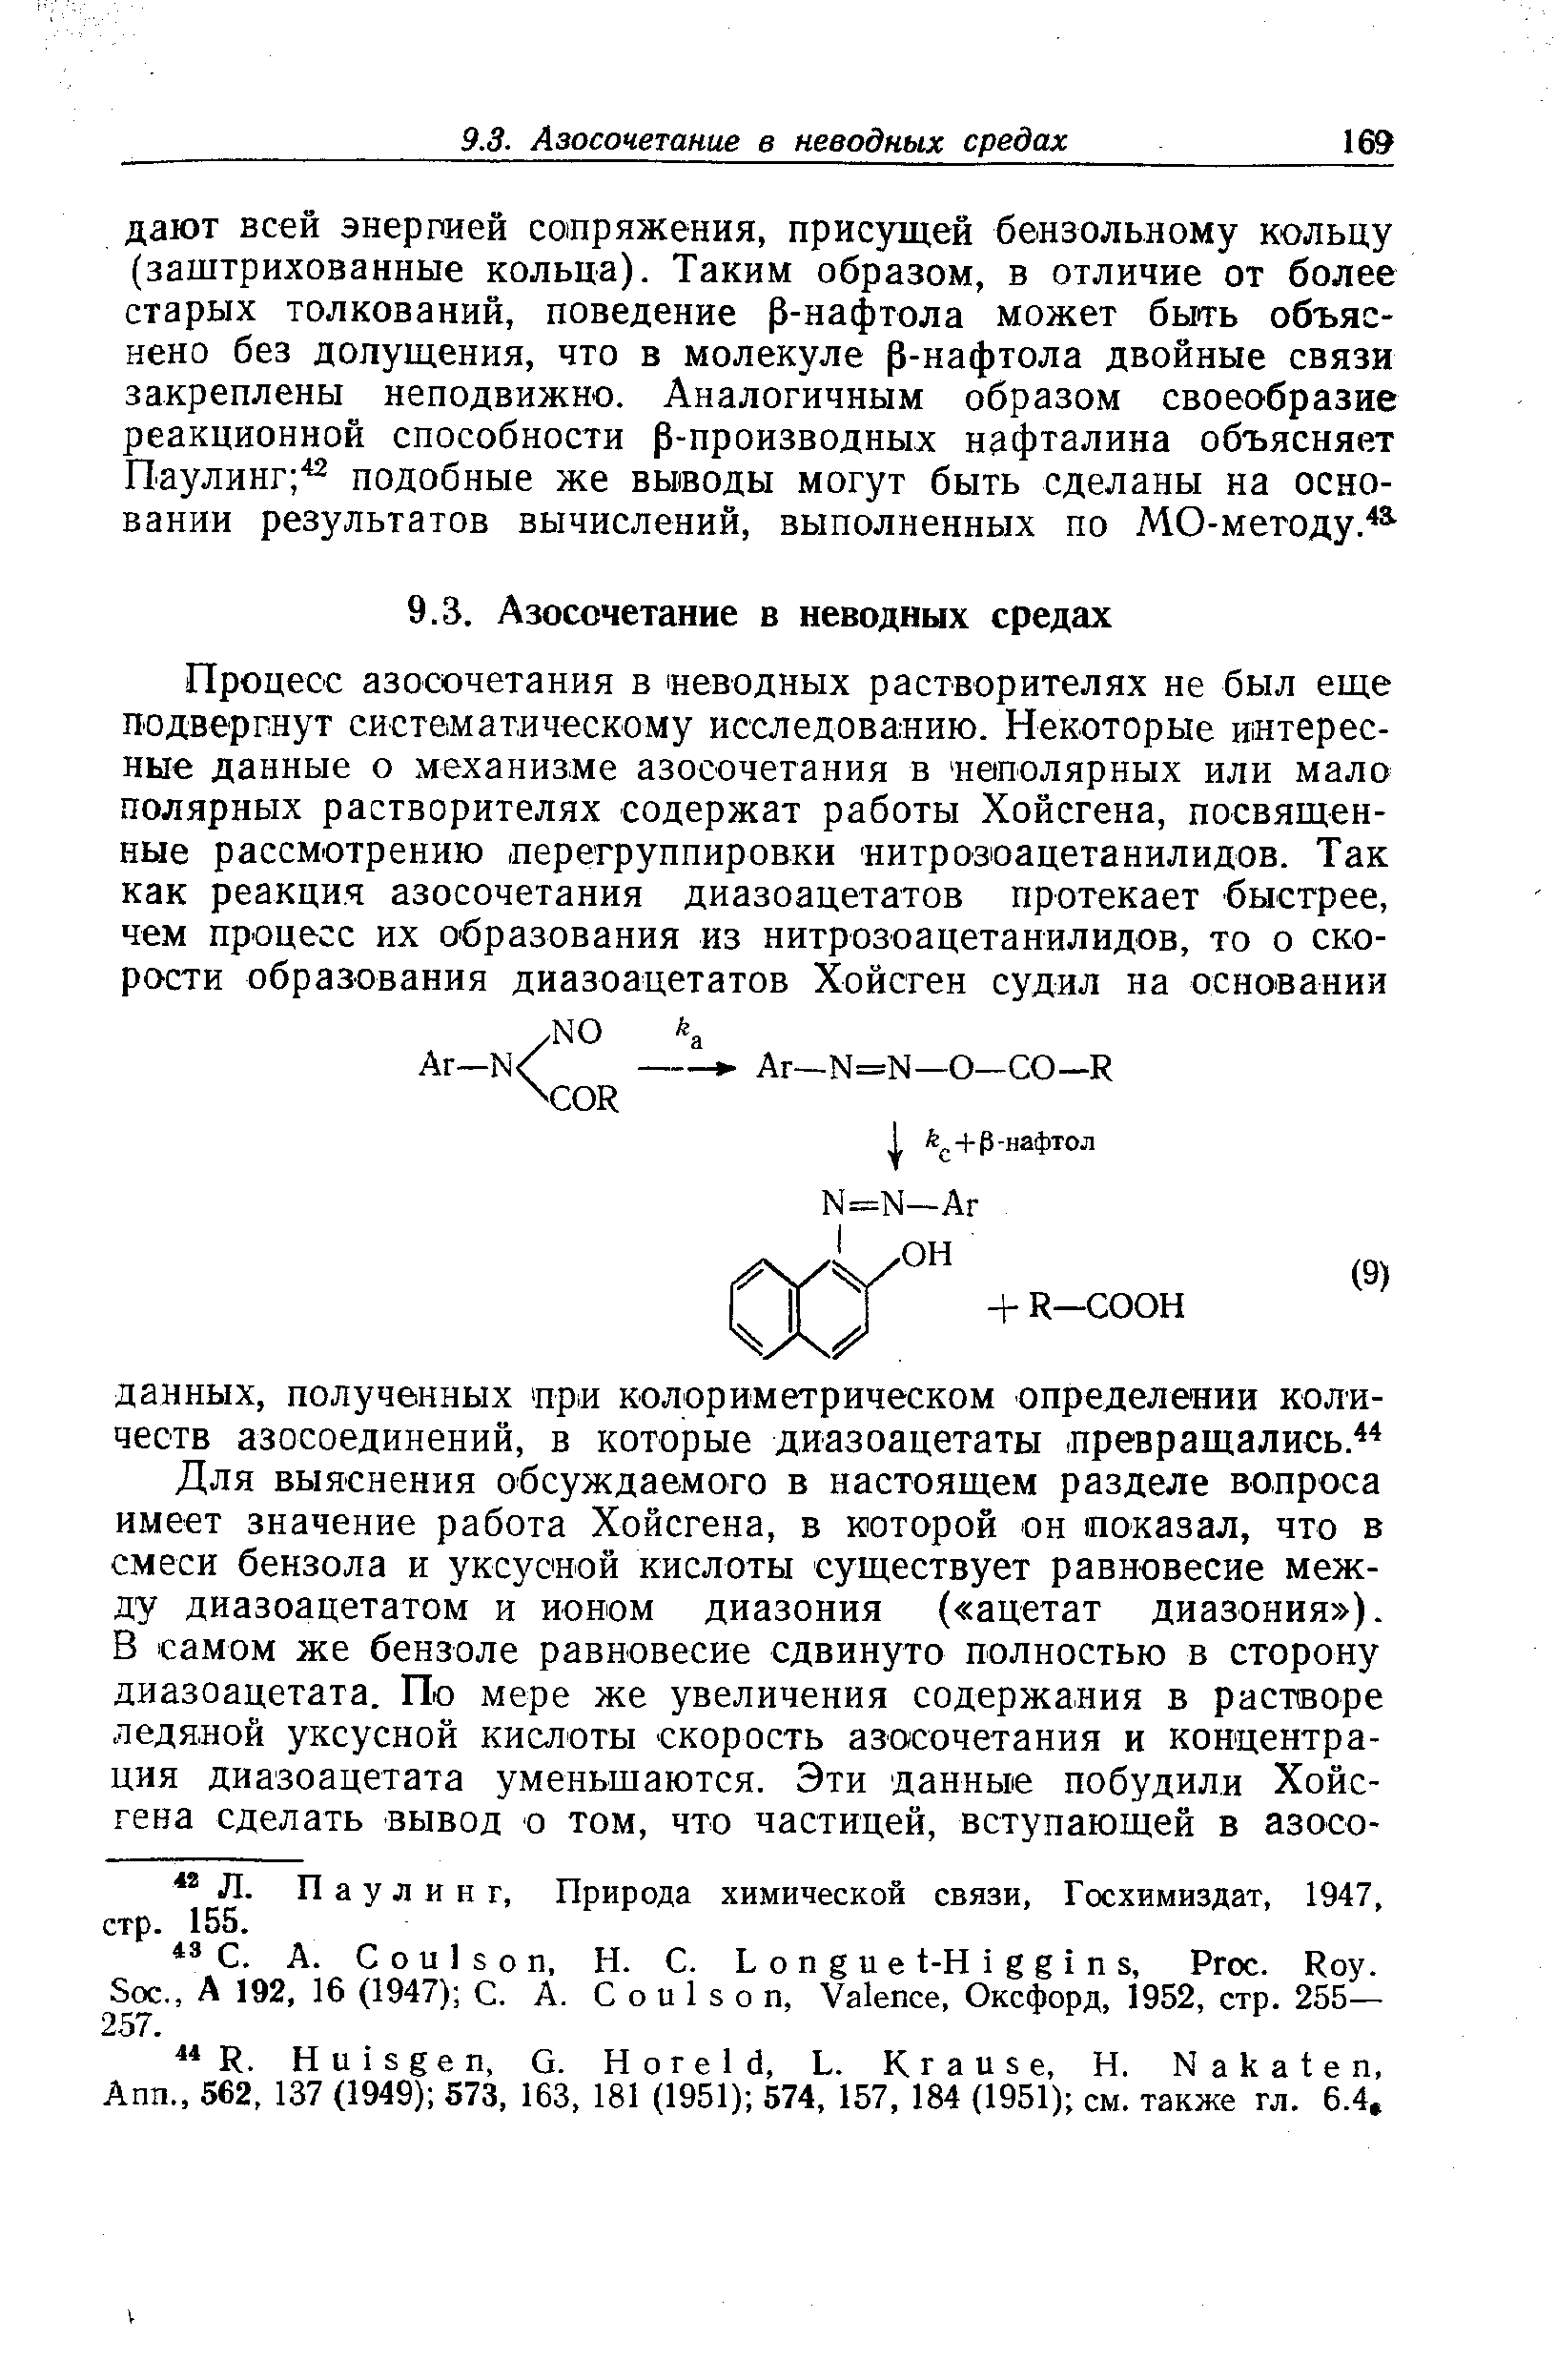 Паулинг, Природа химической связи, Госхимиздат, 1947, стр. 155.